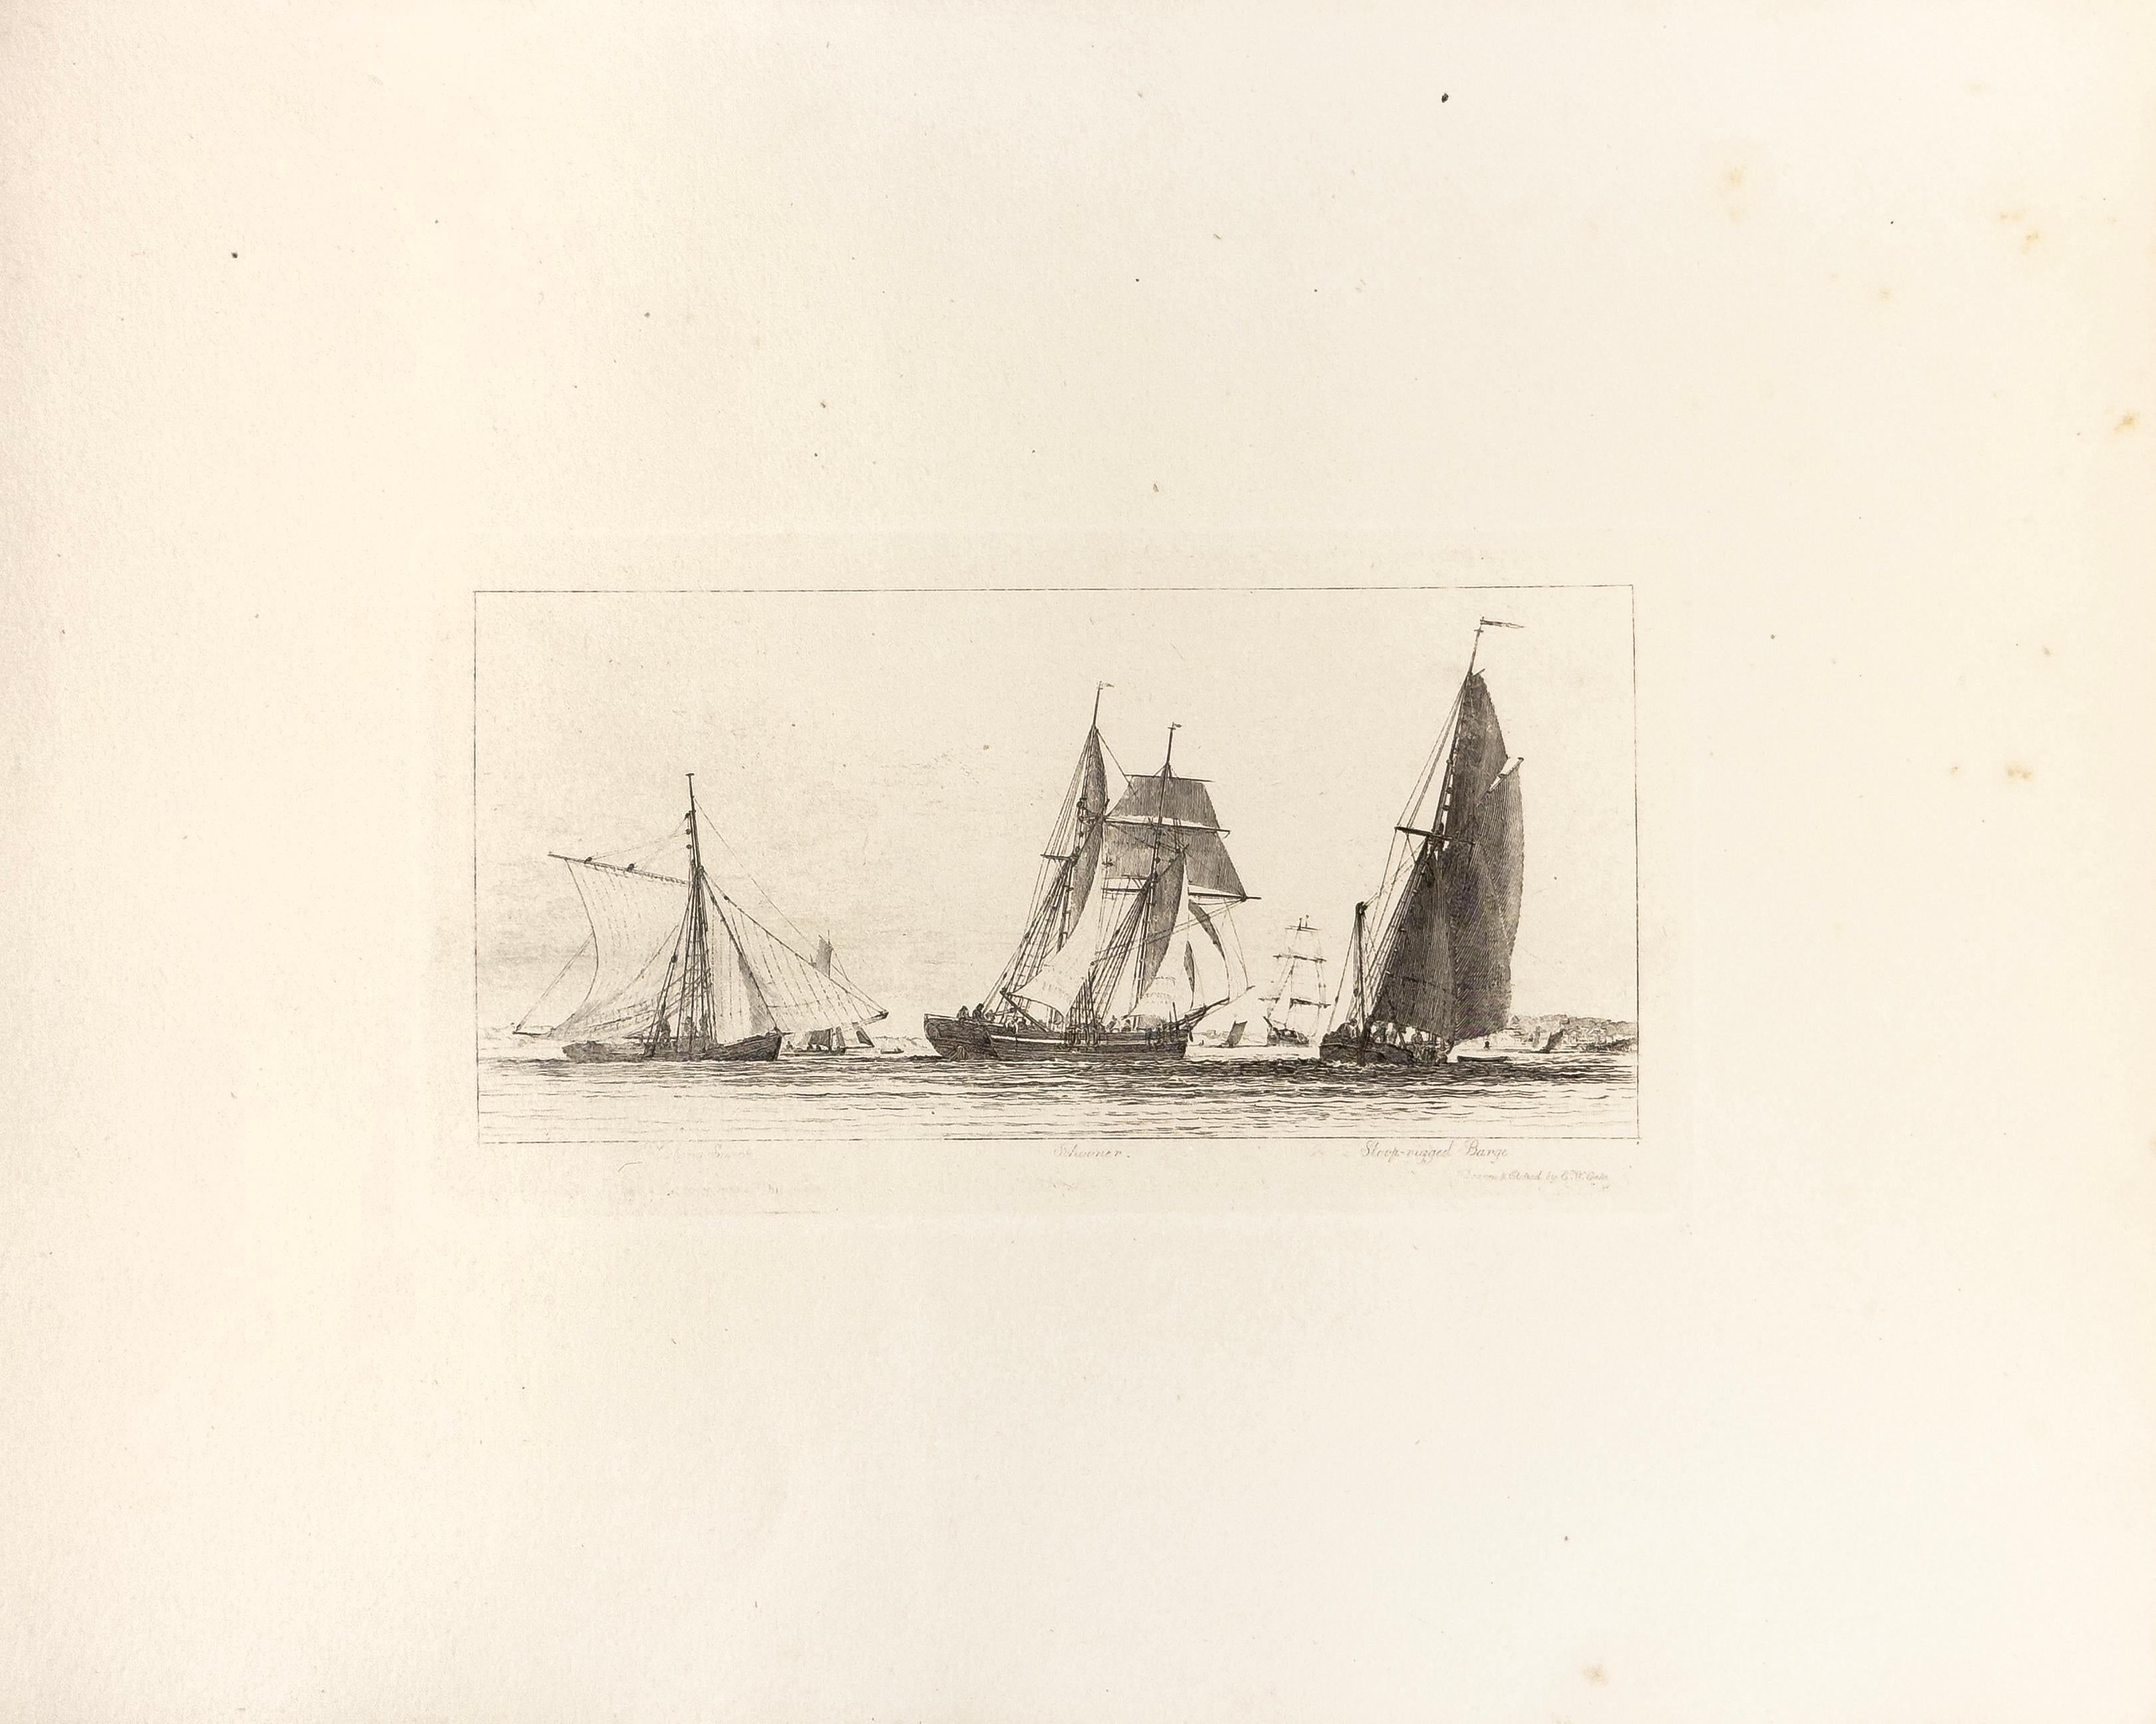 E. W. Cooke Landscape Print - 53: Fishing Smack, Schooner, Sloop-rigged Barge